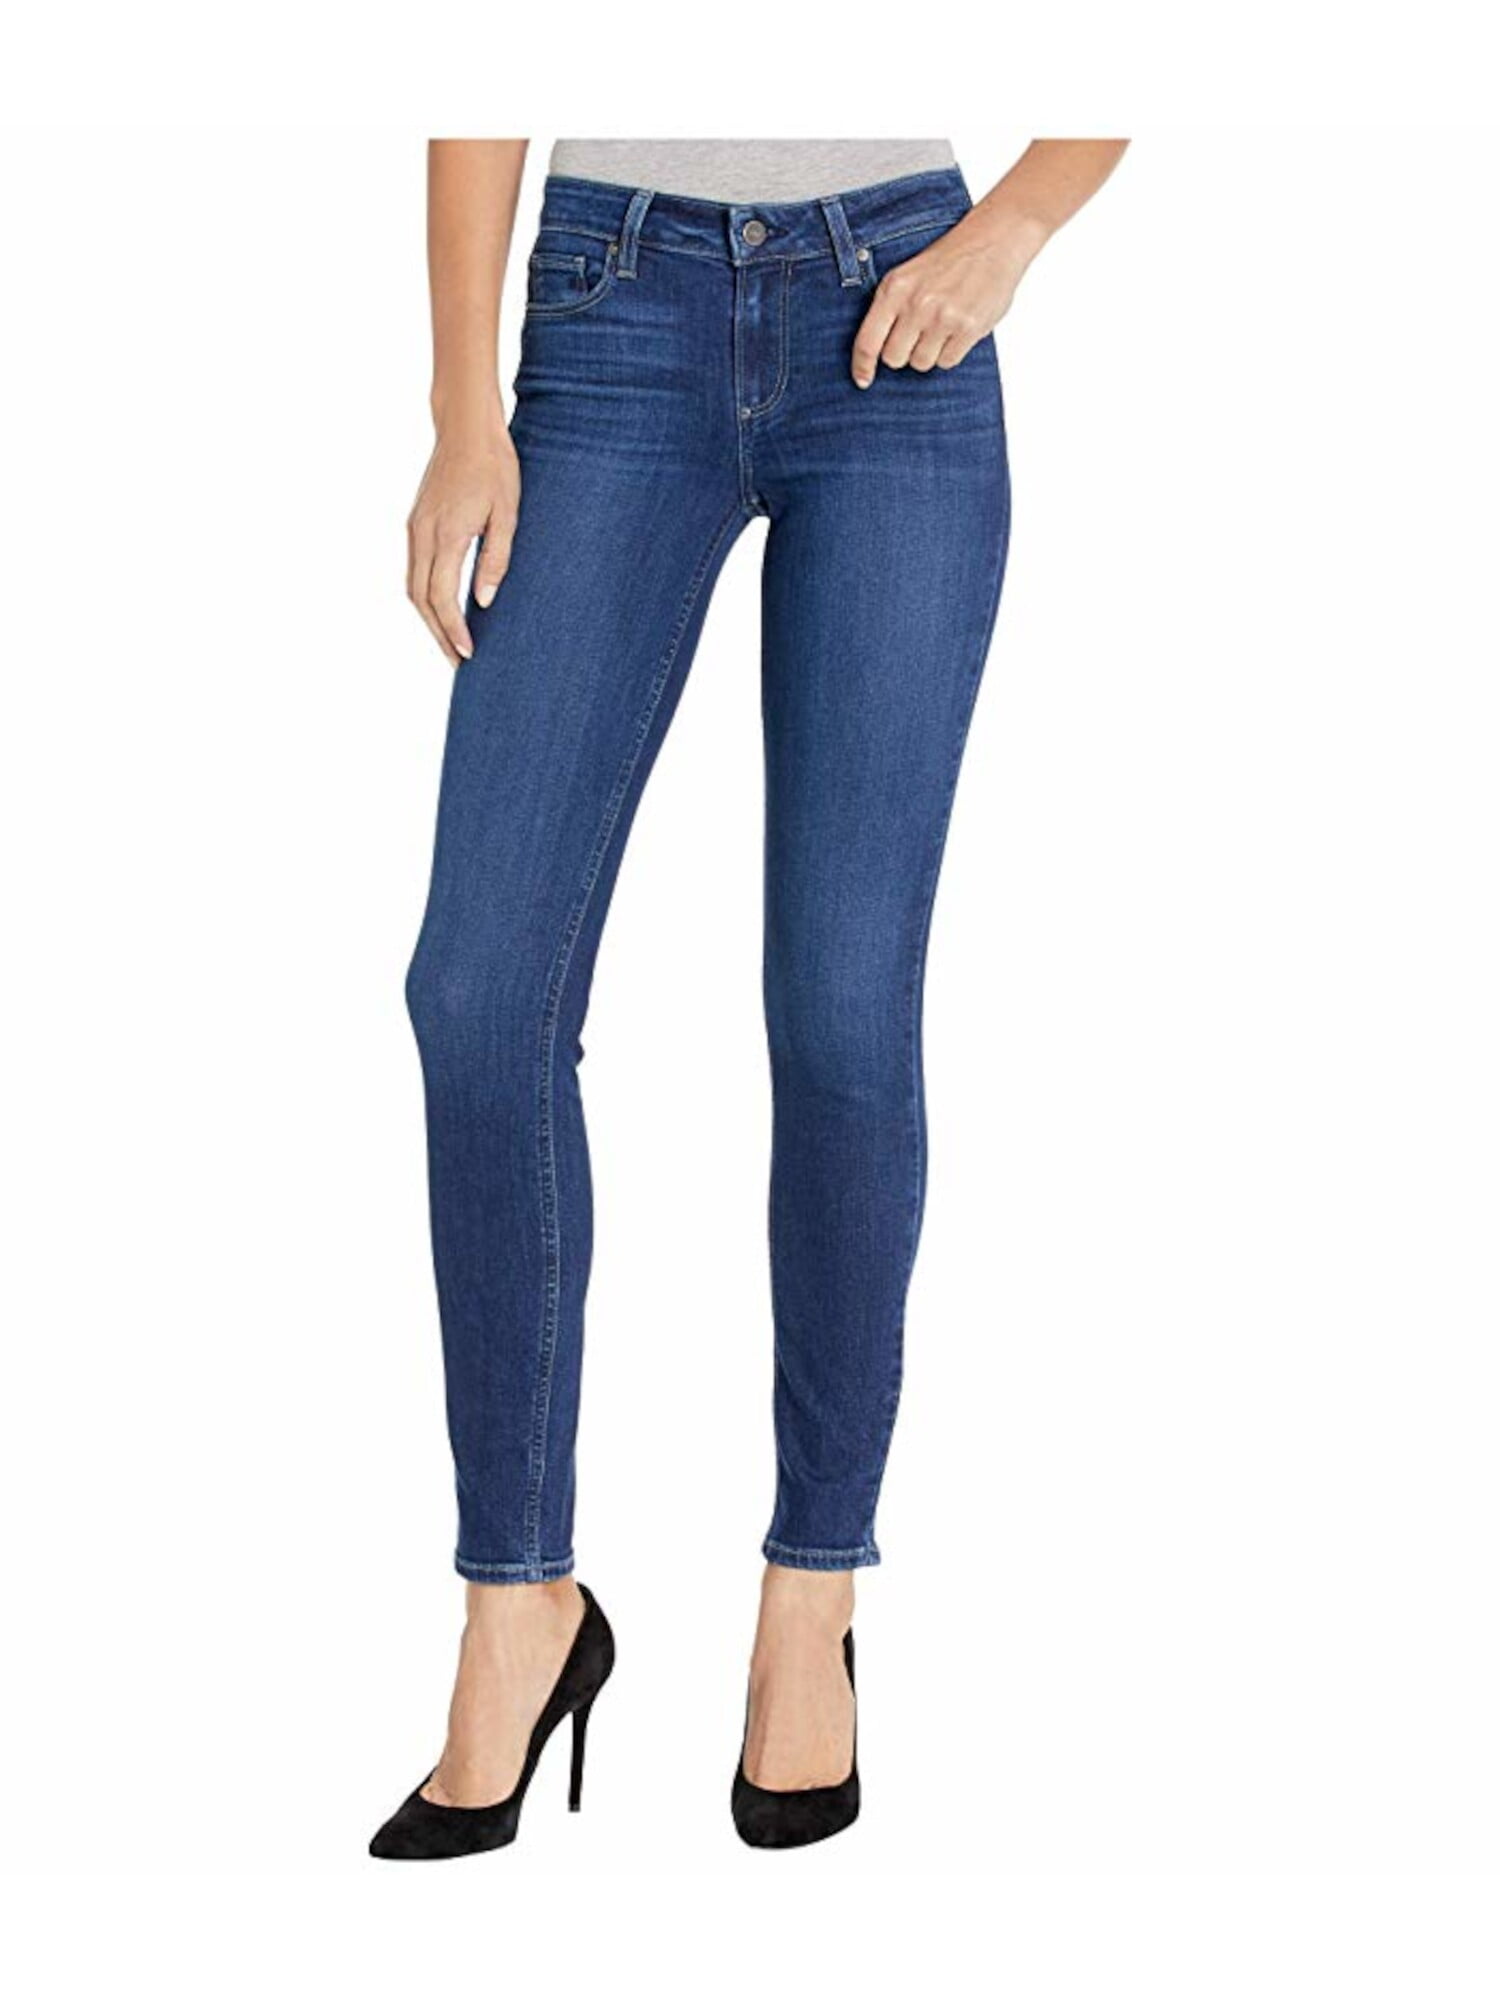 paige jeans size 29